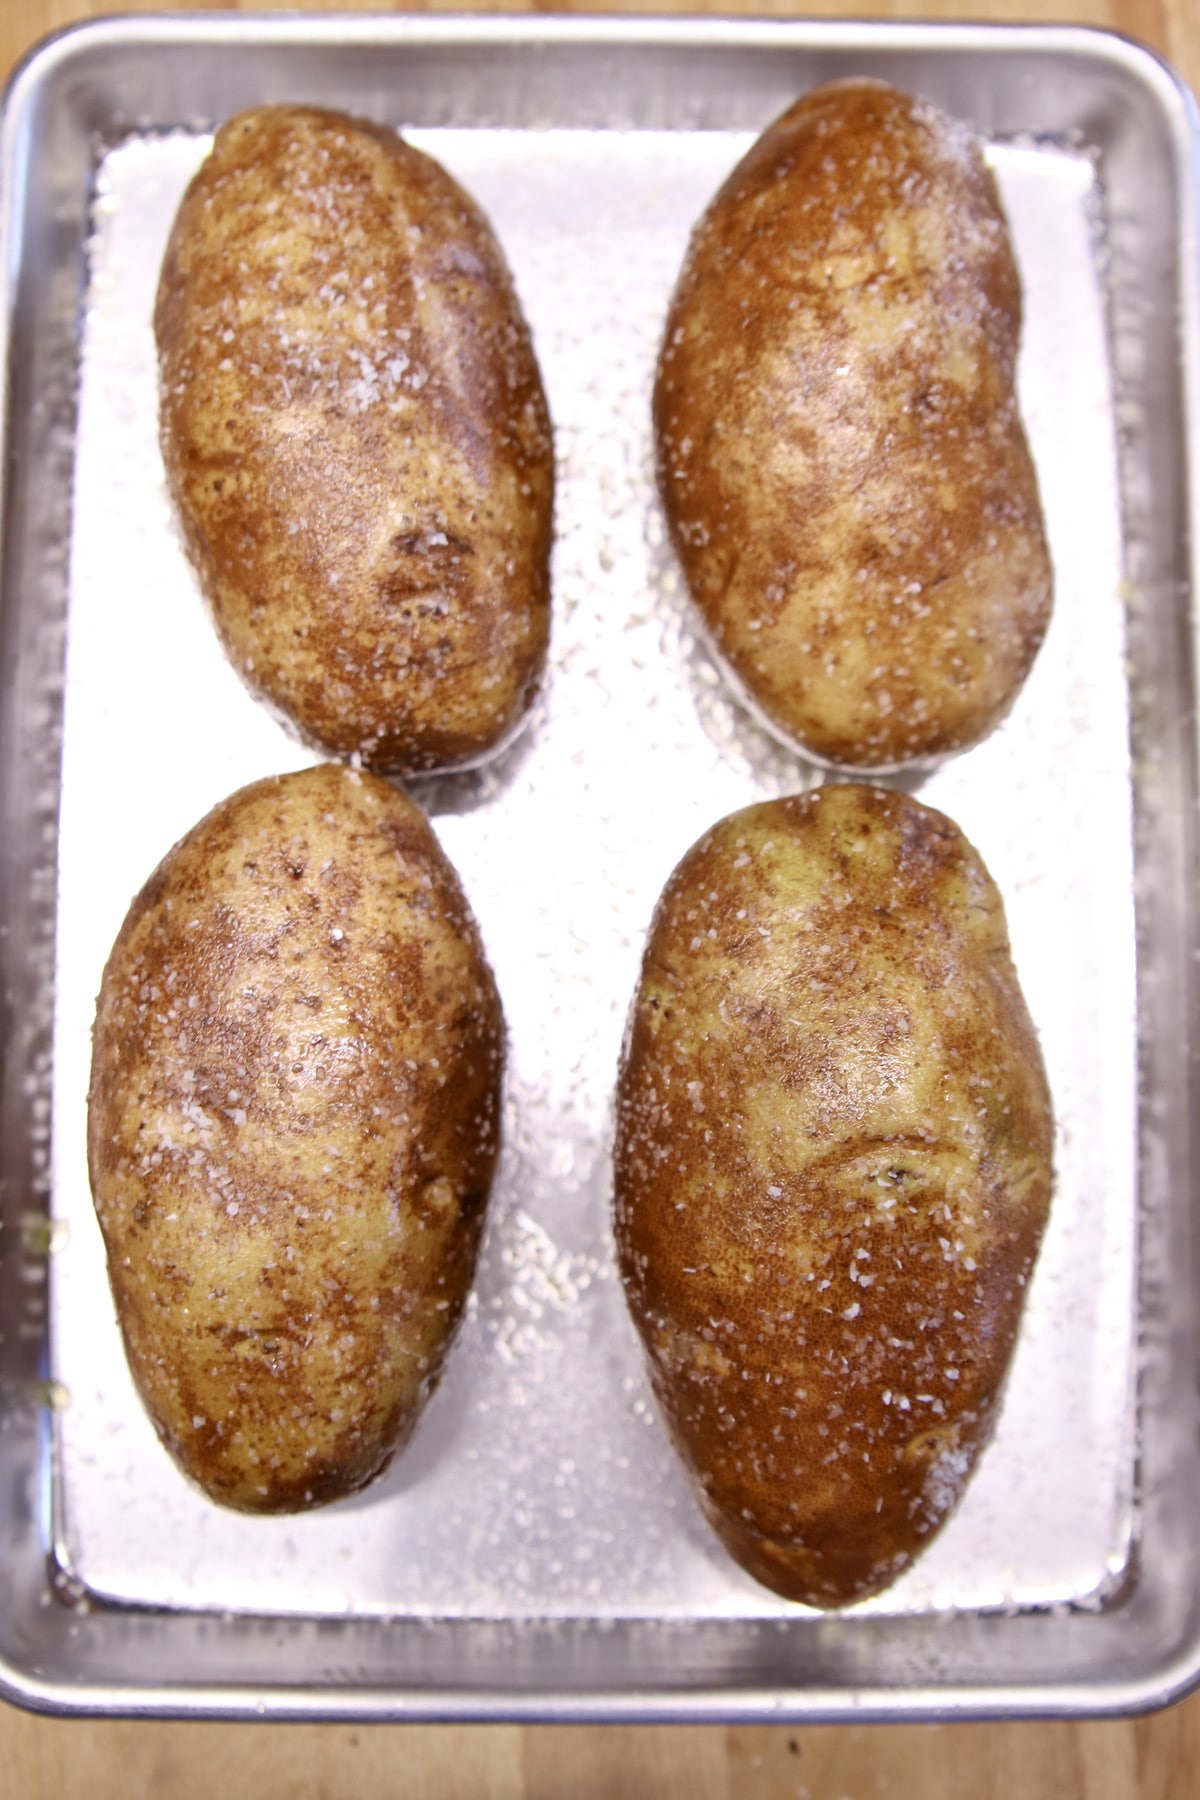 4 russet potatoes on a baking sheet.